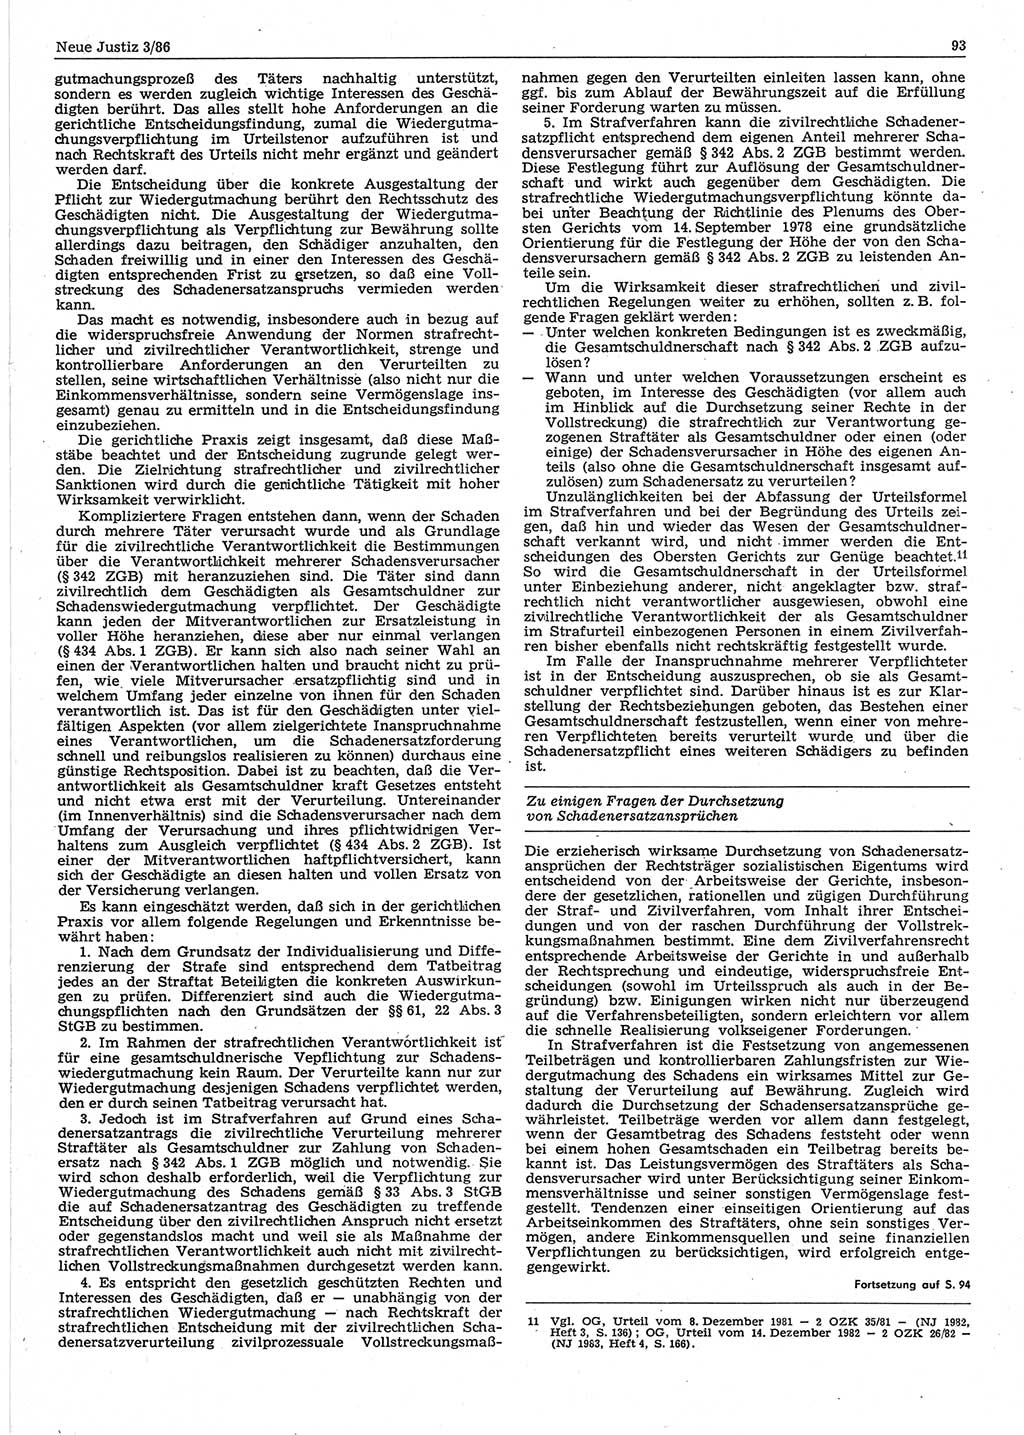 Neue Justiz (NJ), Zeitschrift für sozialistisches Recht und Gesetzlichkeit [Deutsche Demokratische Republik (DDR)], 40. Jahrgang 1986, Seite 93 (NJ DDR 1986, S. 93)